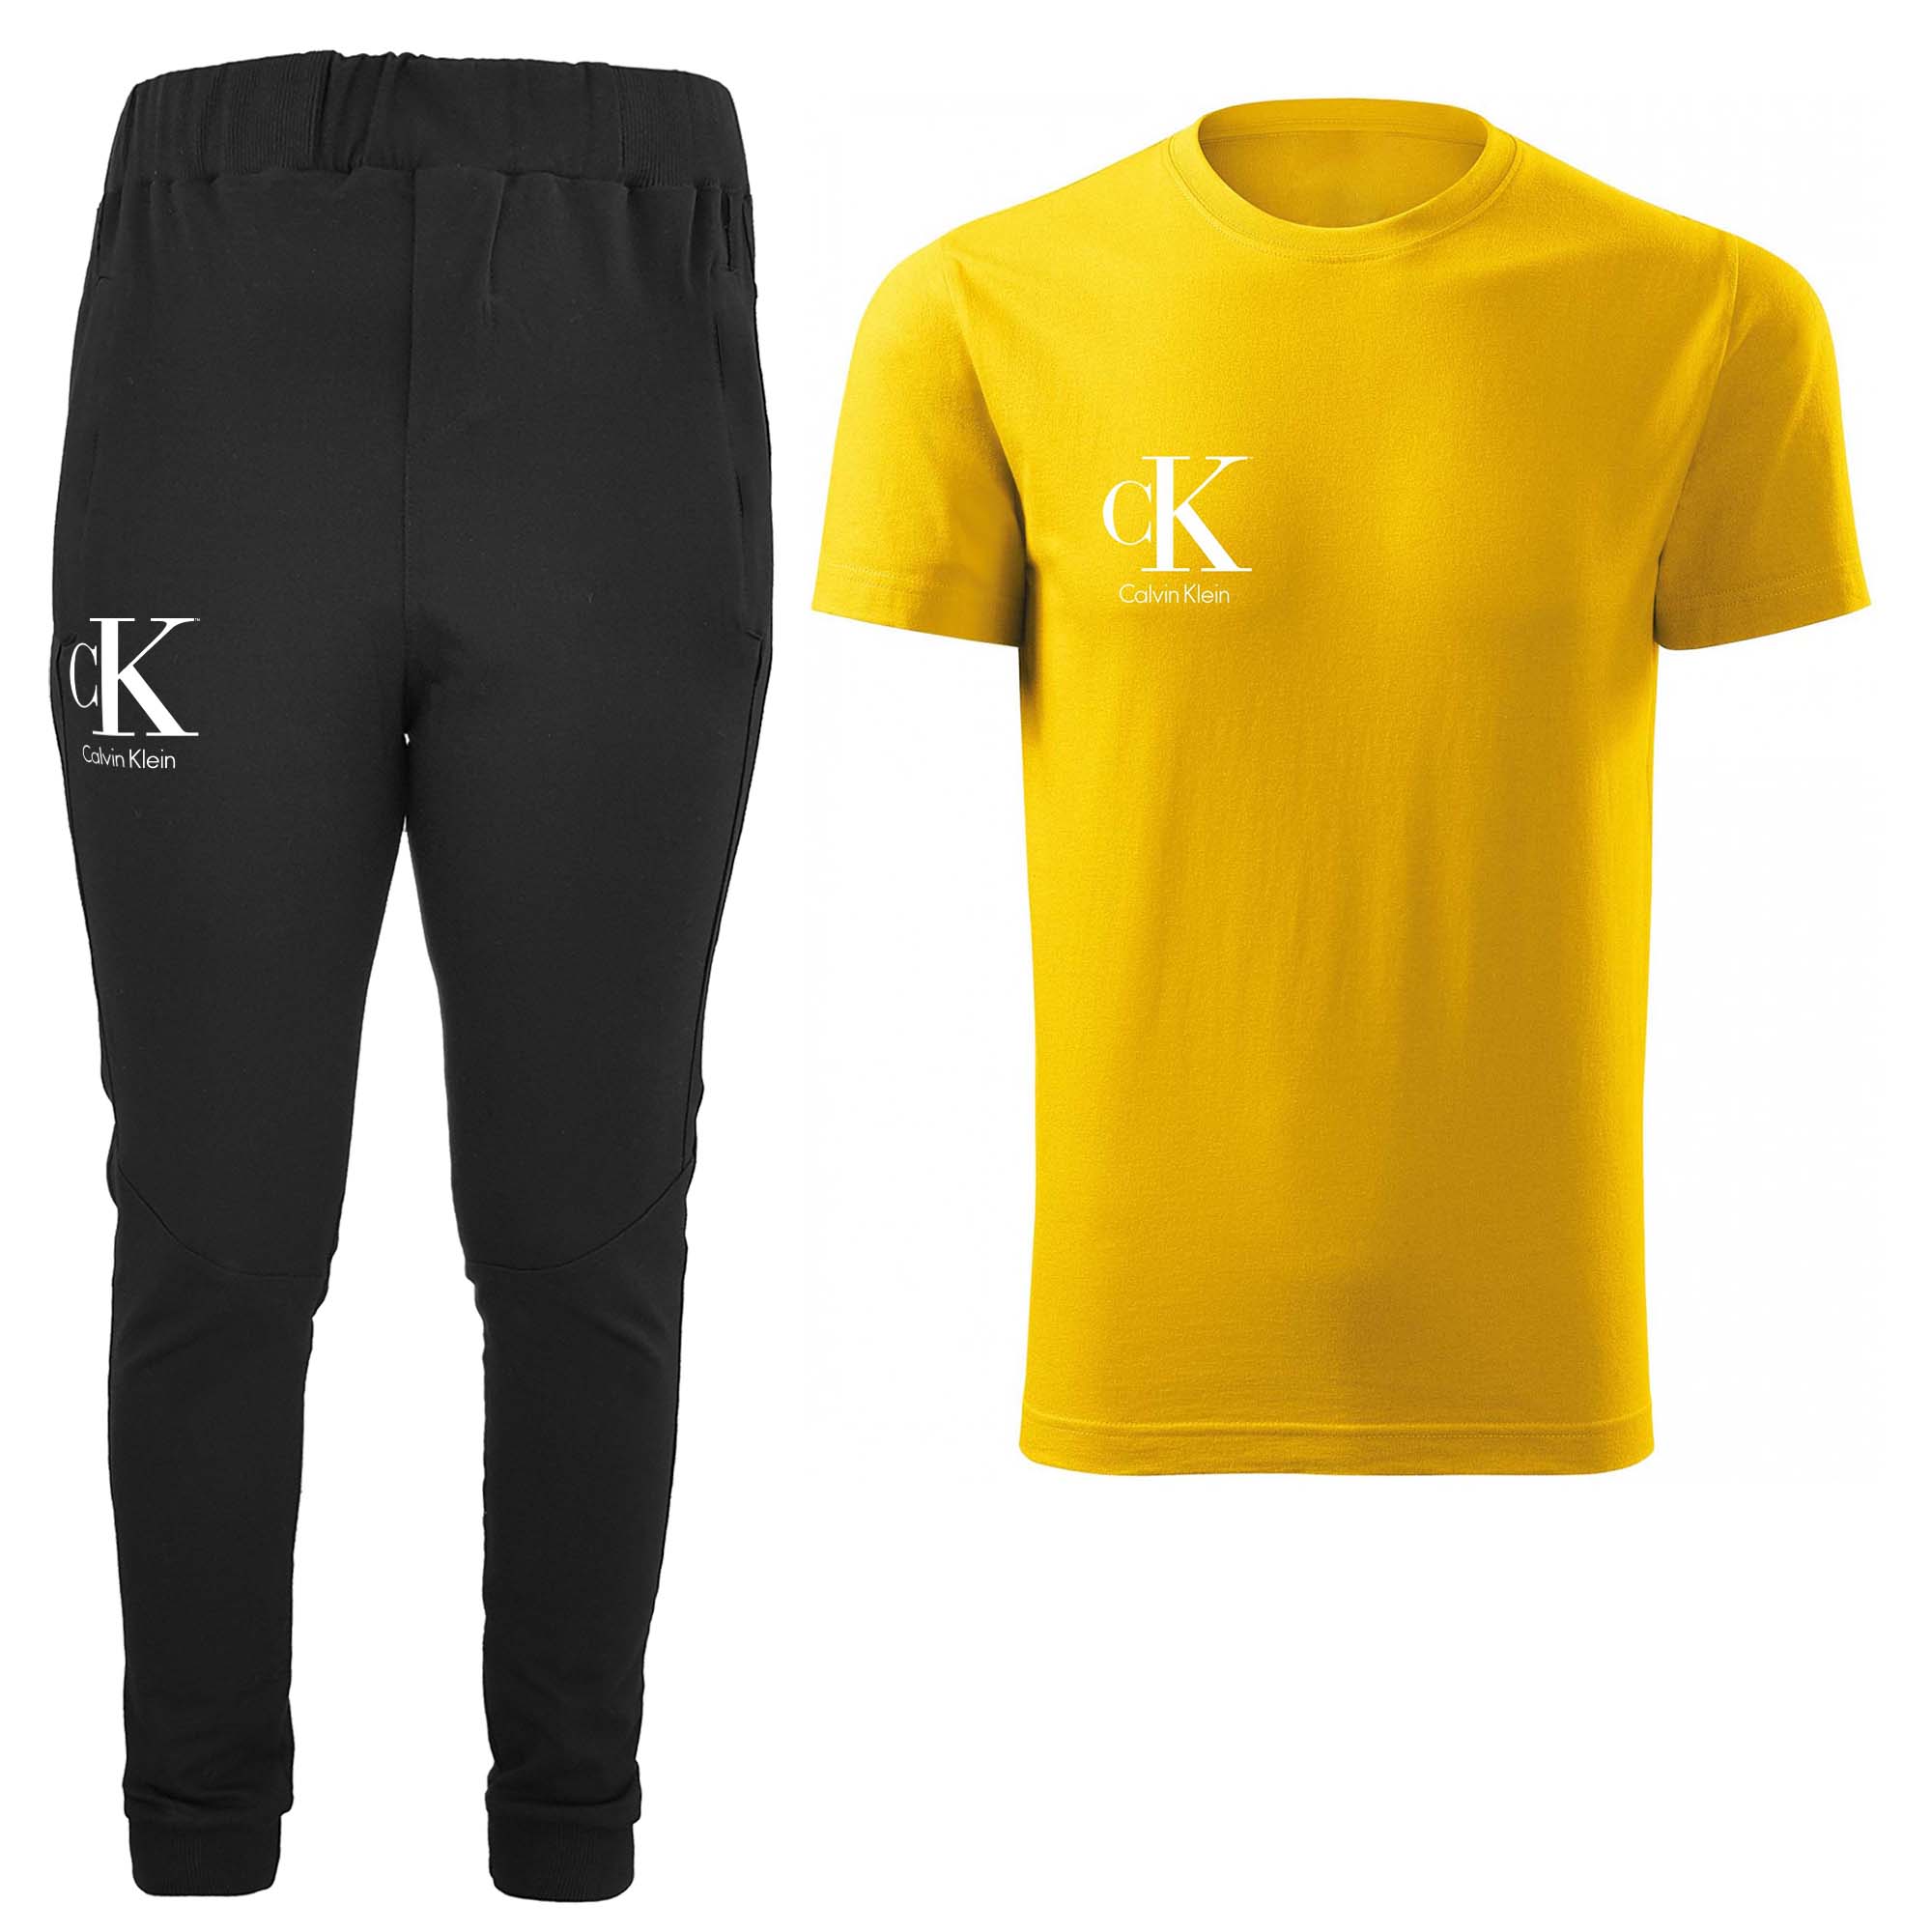 ست تی شرت و شلوار مردانه مدل 00416155 رنگ زرد